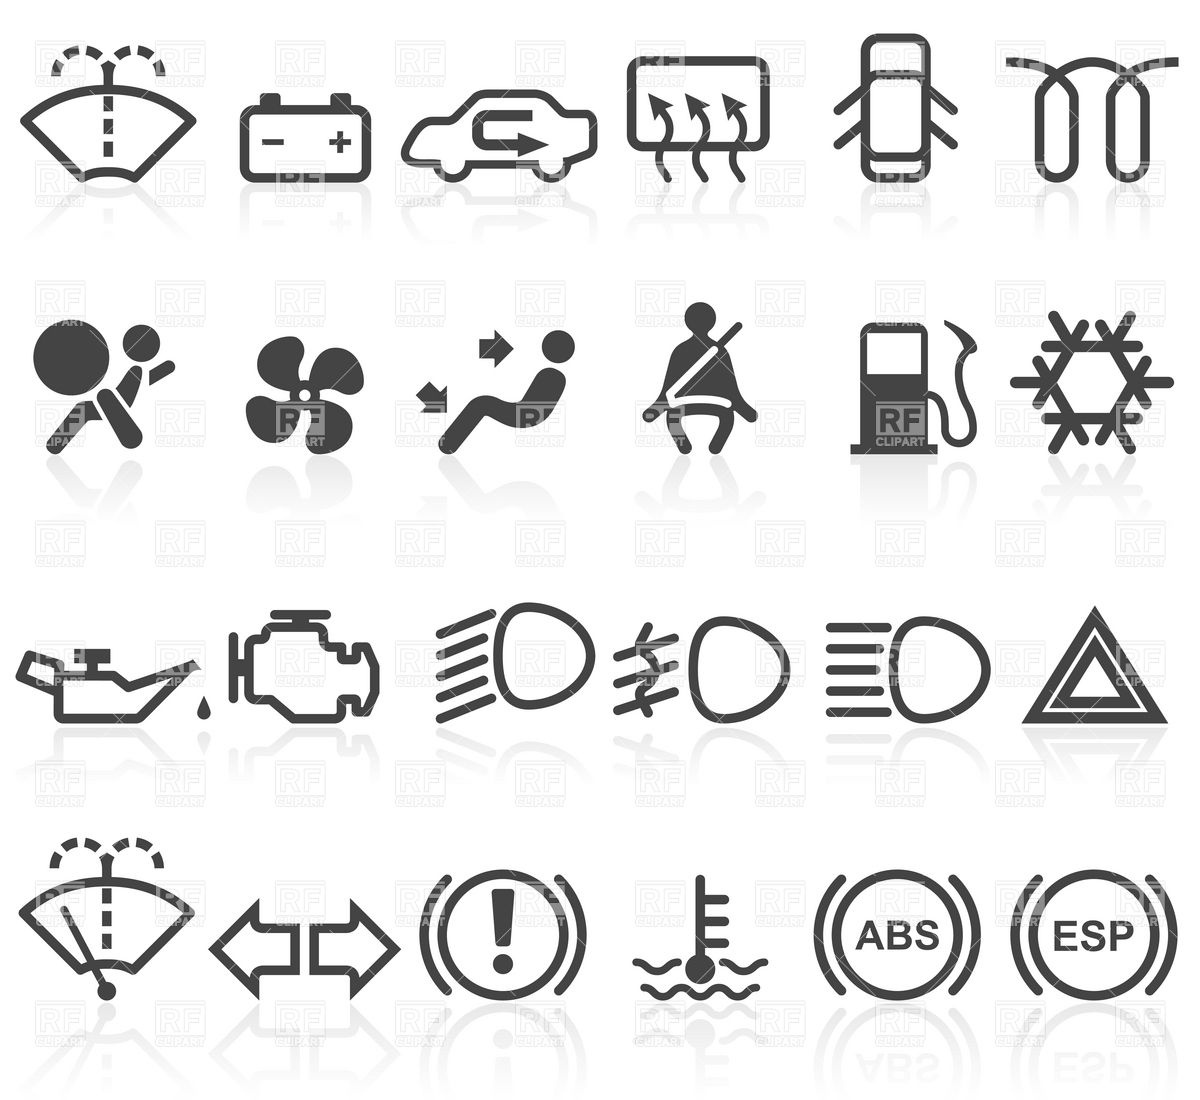 15 Automotive Symbols Icons Images